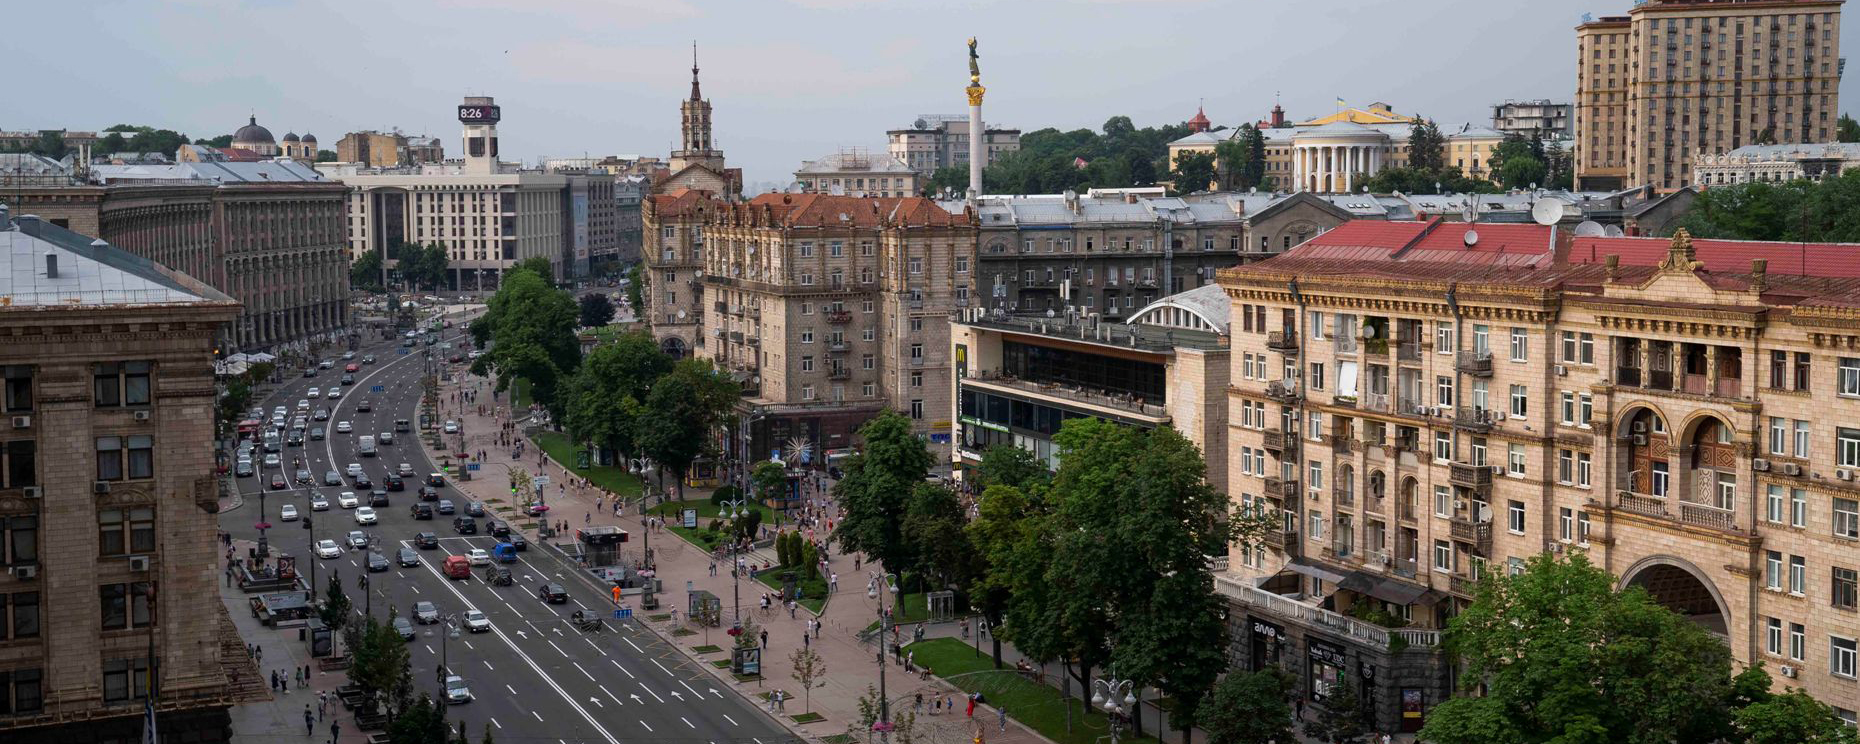 В Киеве переименовали 23 улицы, связанные с советским прошлым и РФ